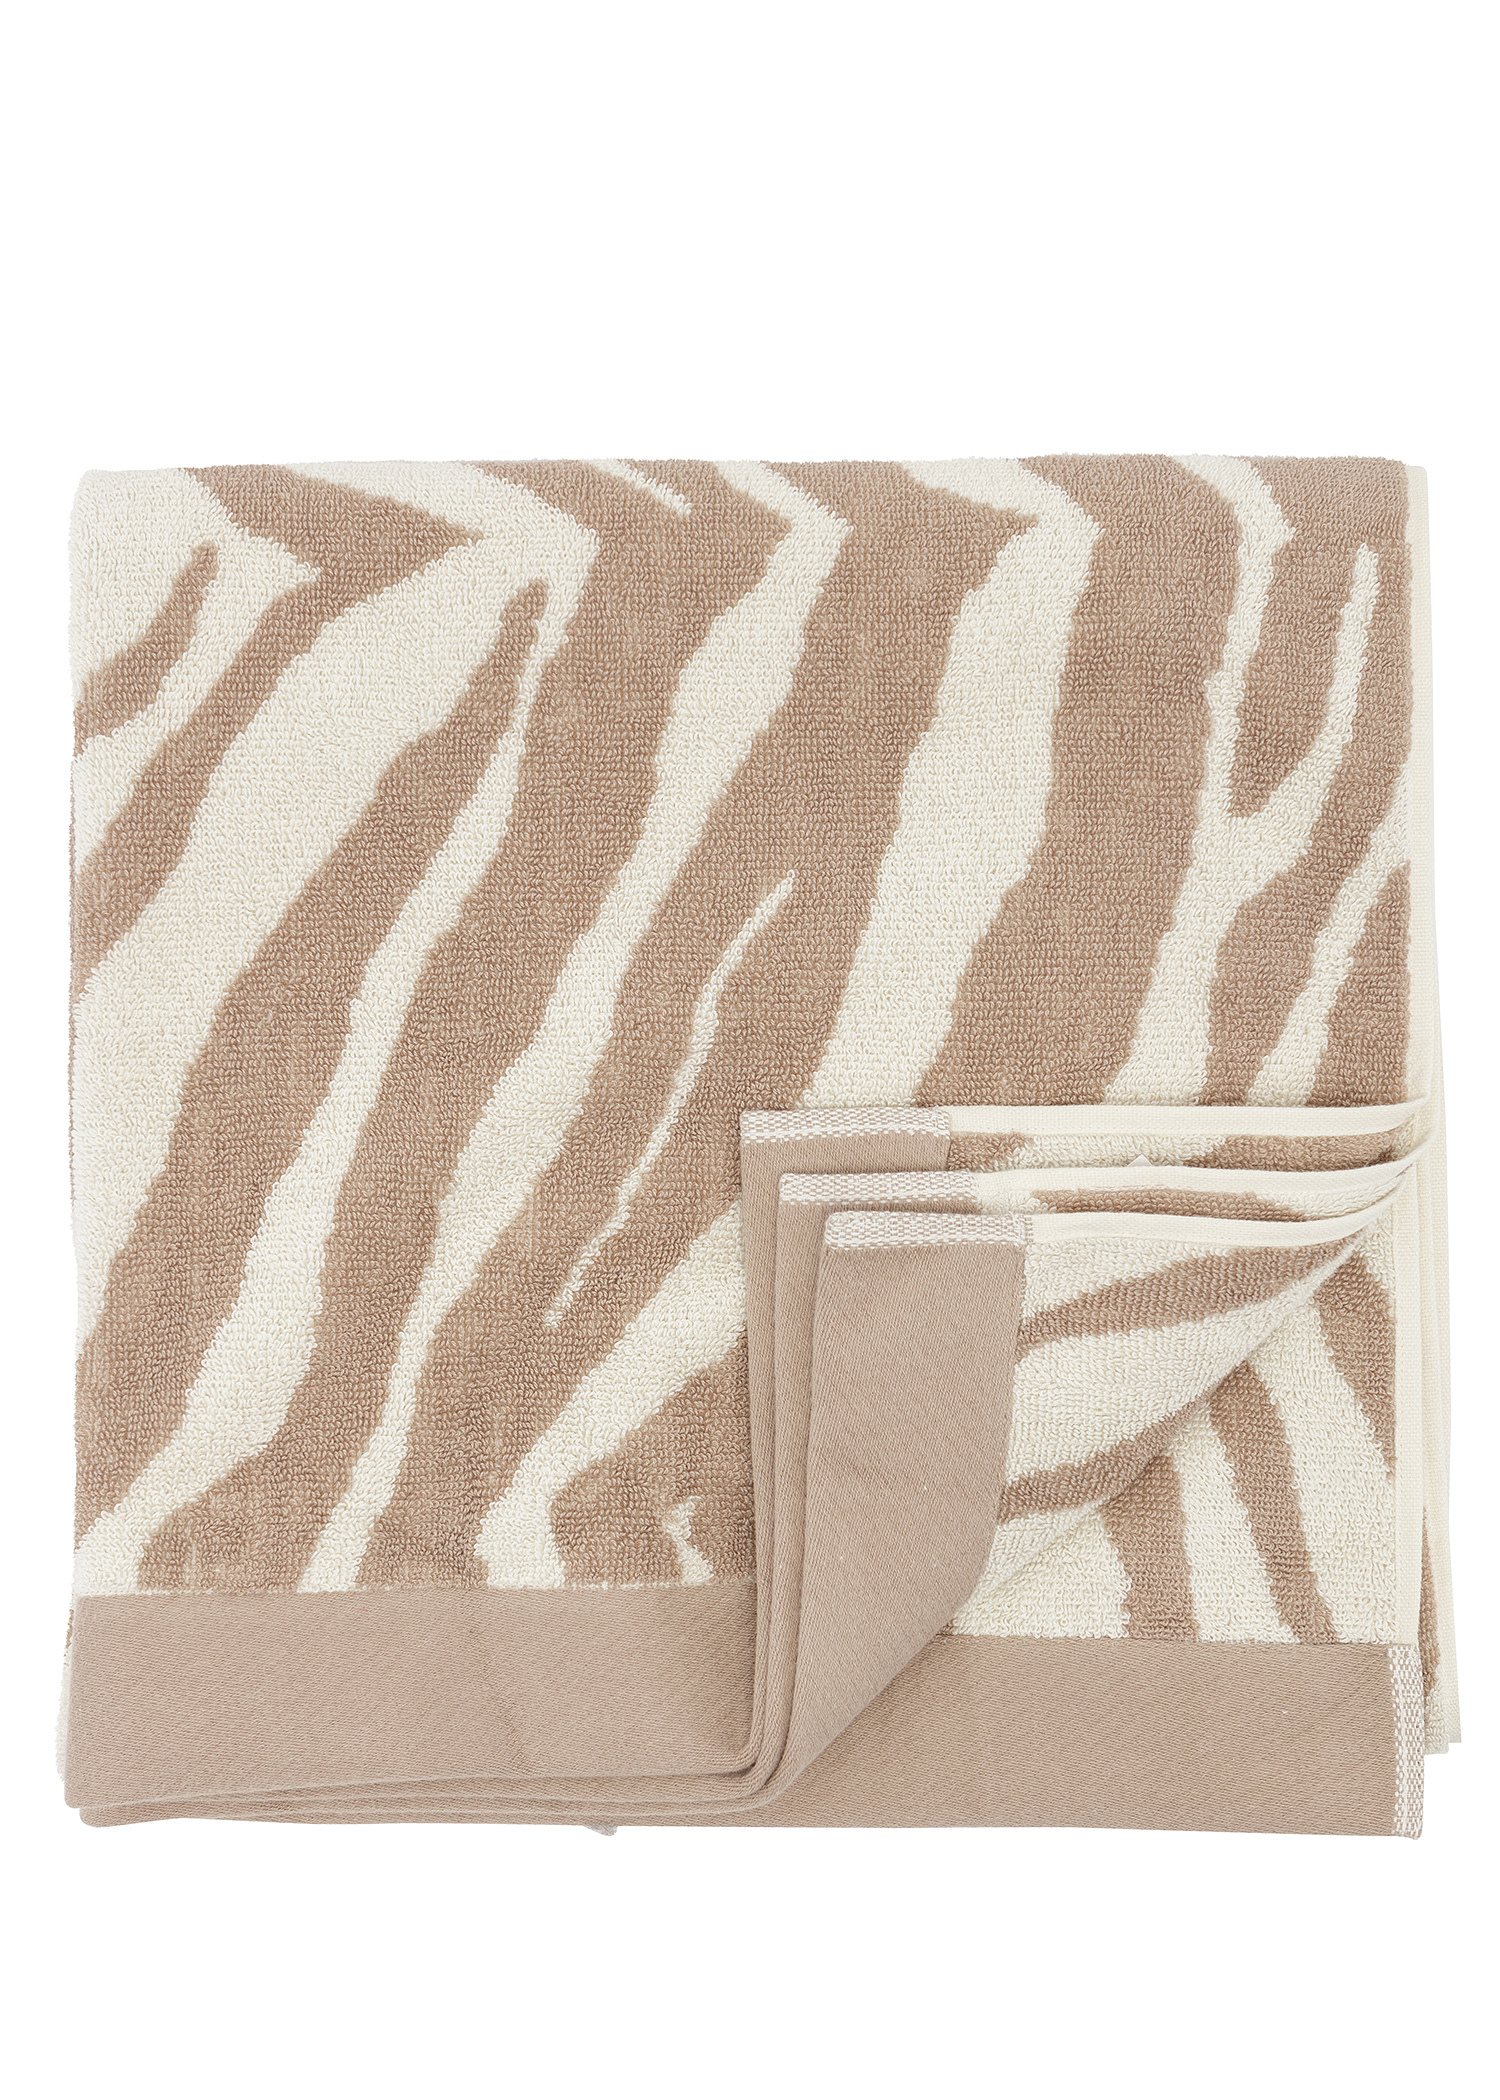 Zebra patterned bath towel Image 0